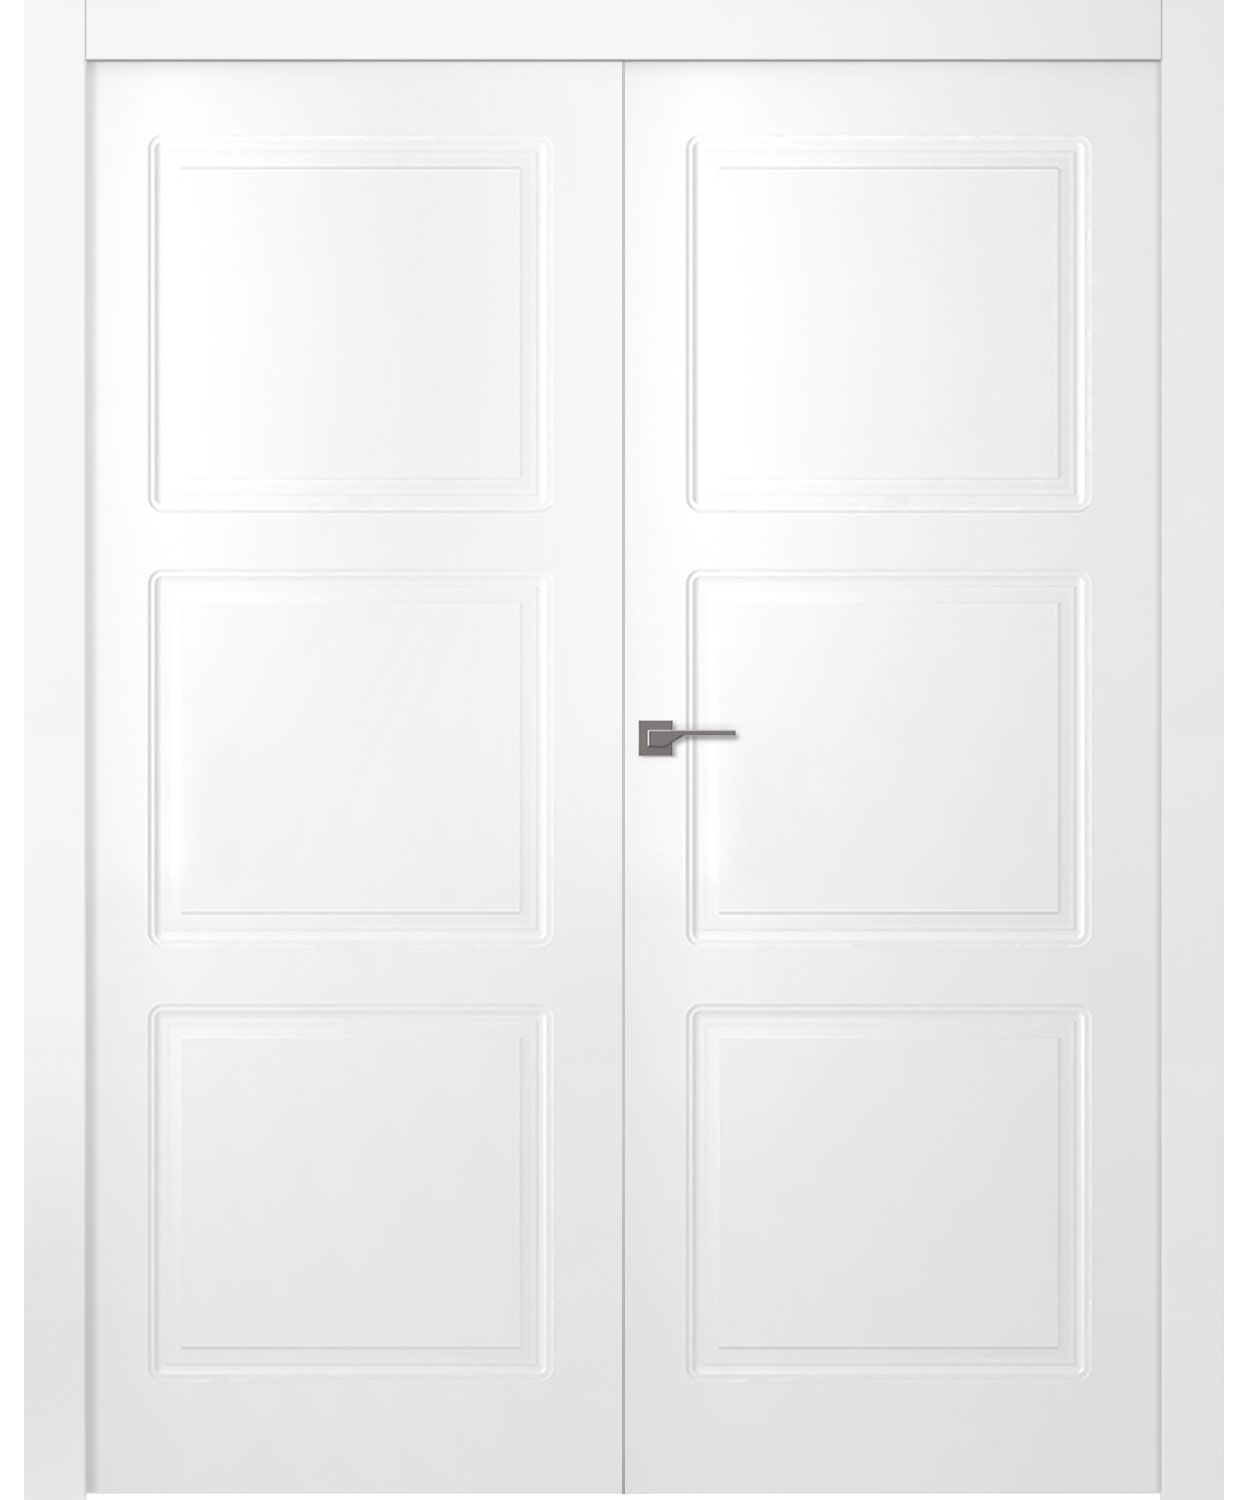 Дверное Полотно Пвдгщ "Granna" Эмаль Белый 2,0-0,8 Smart Core Распашная двойная